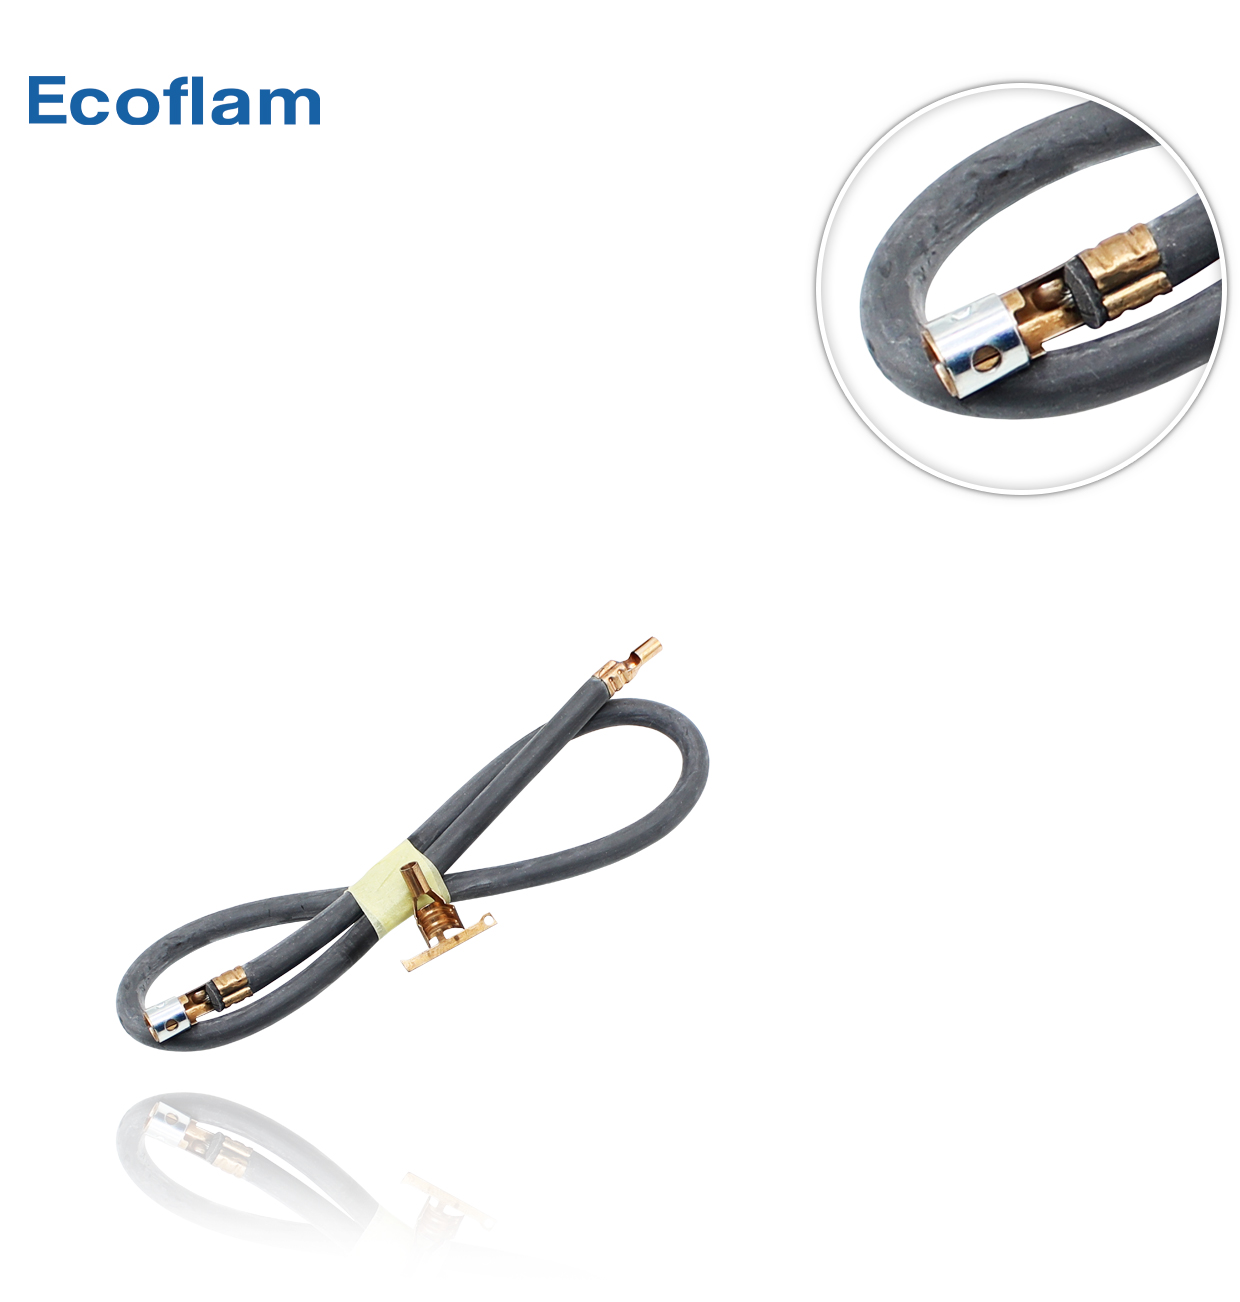 CABLE ELECTRODO IONIZACION - CONECTORES ECOFLAM 65320946